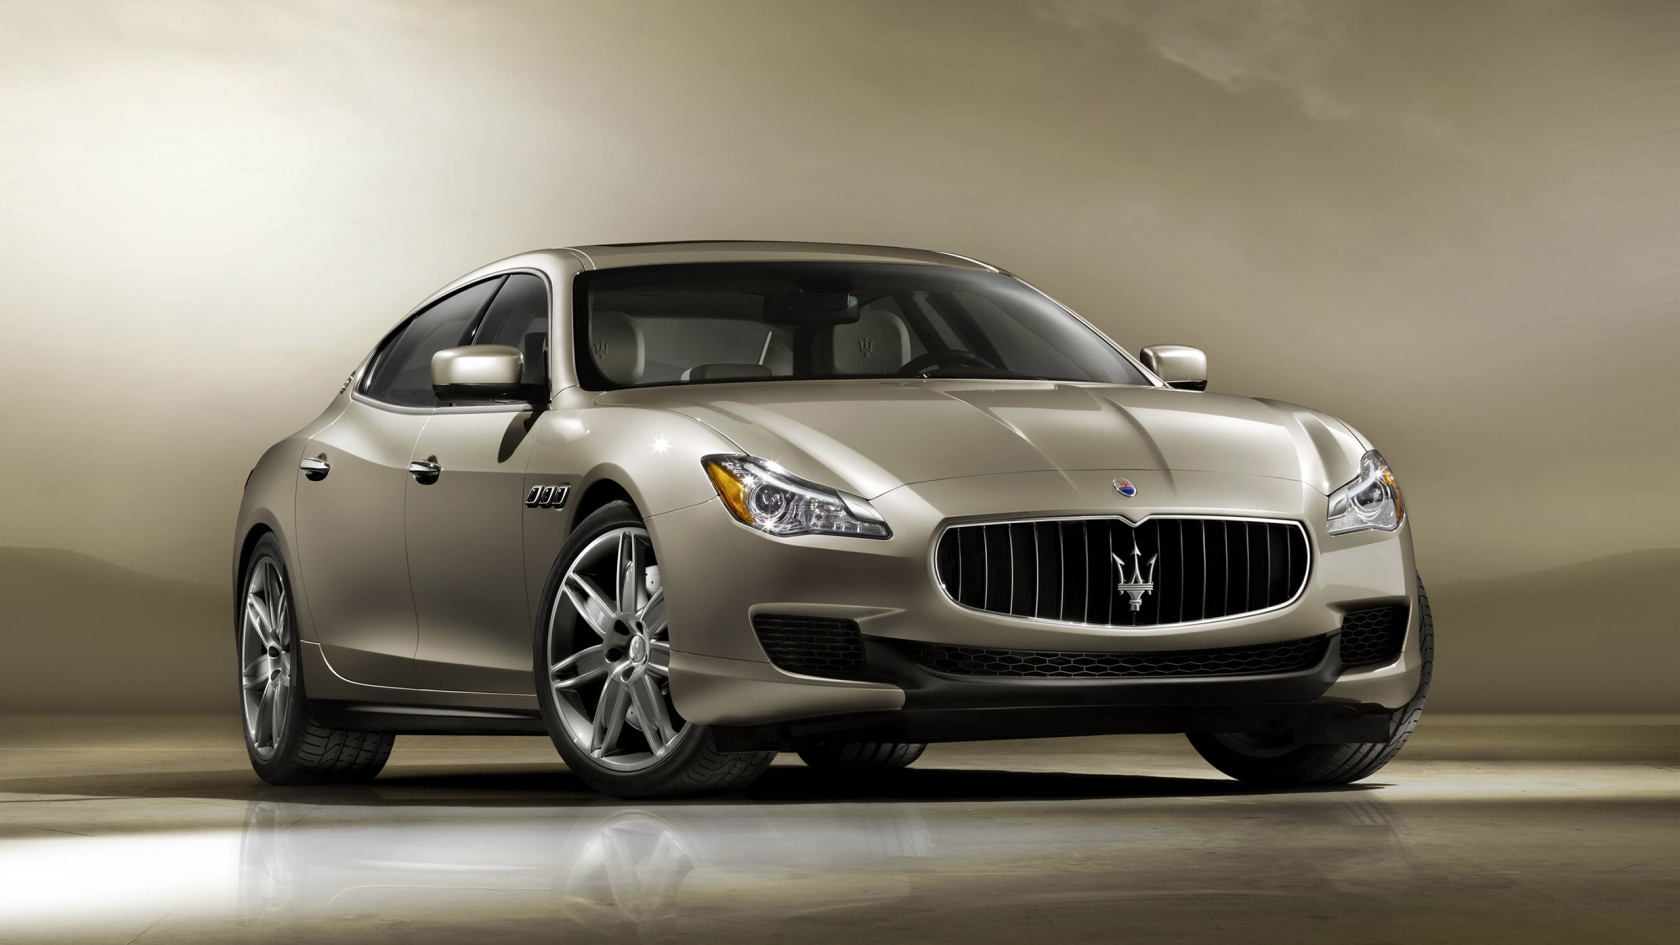 2013 Maserati Quattroporte Front for 1680 x 945 HDTV resolution